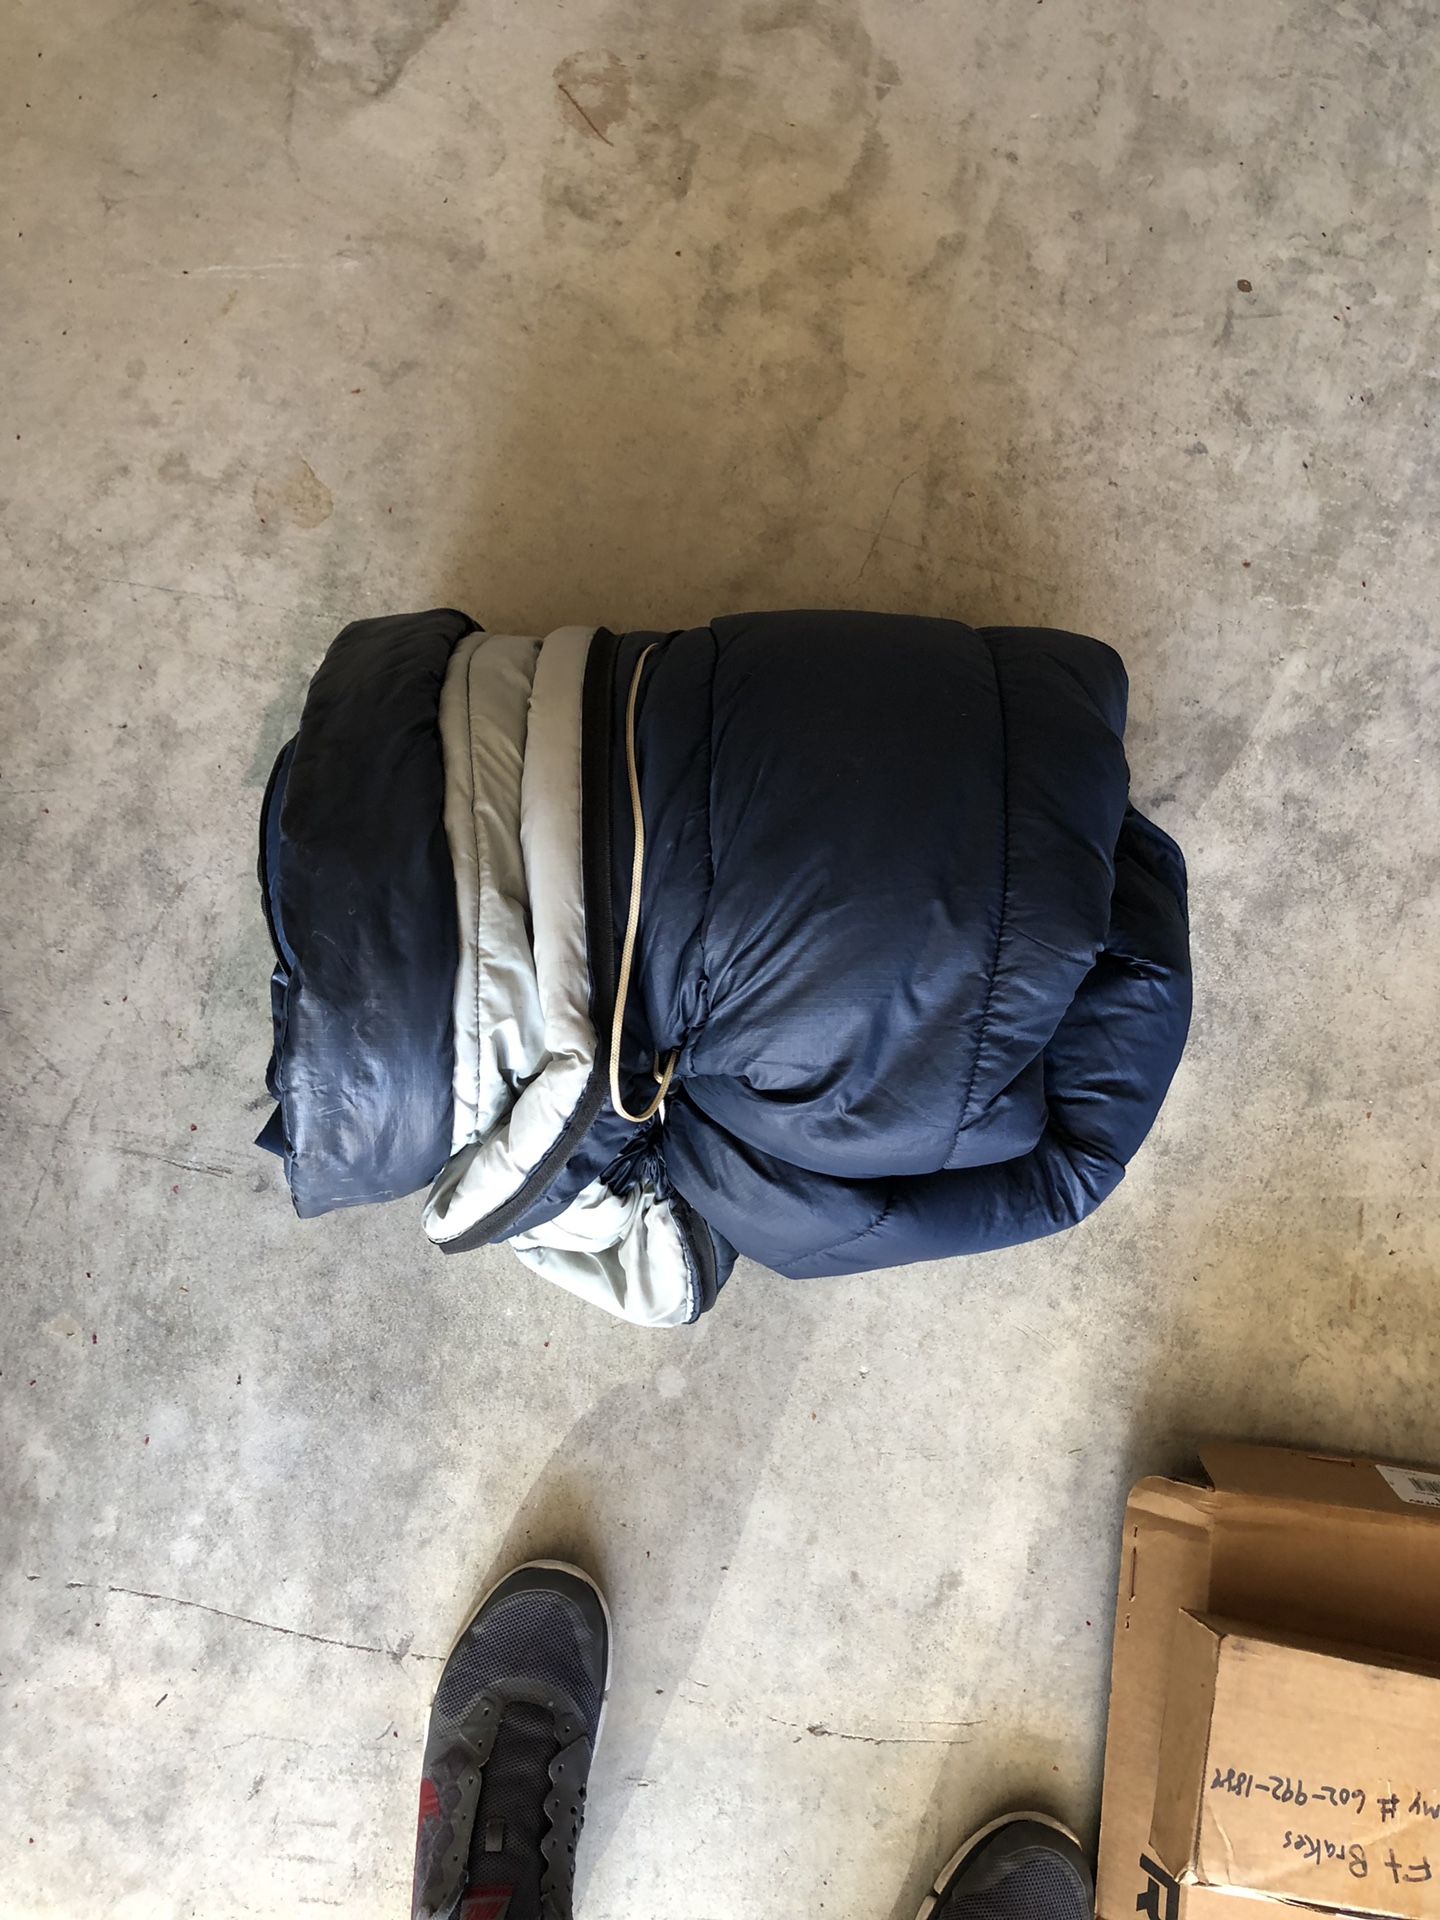 Older sleeping bag